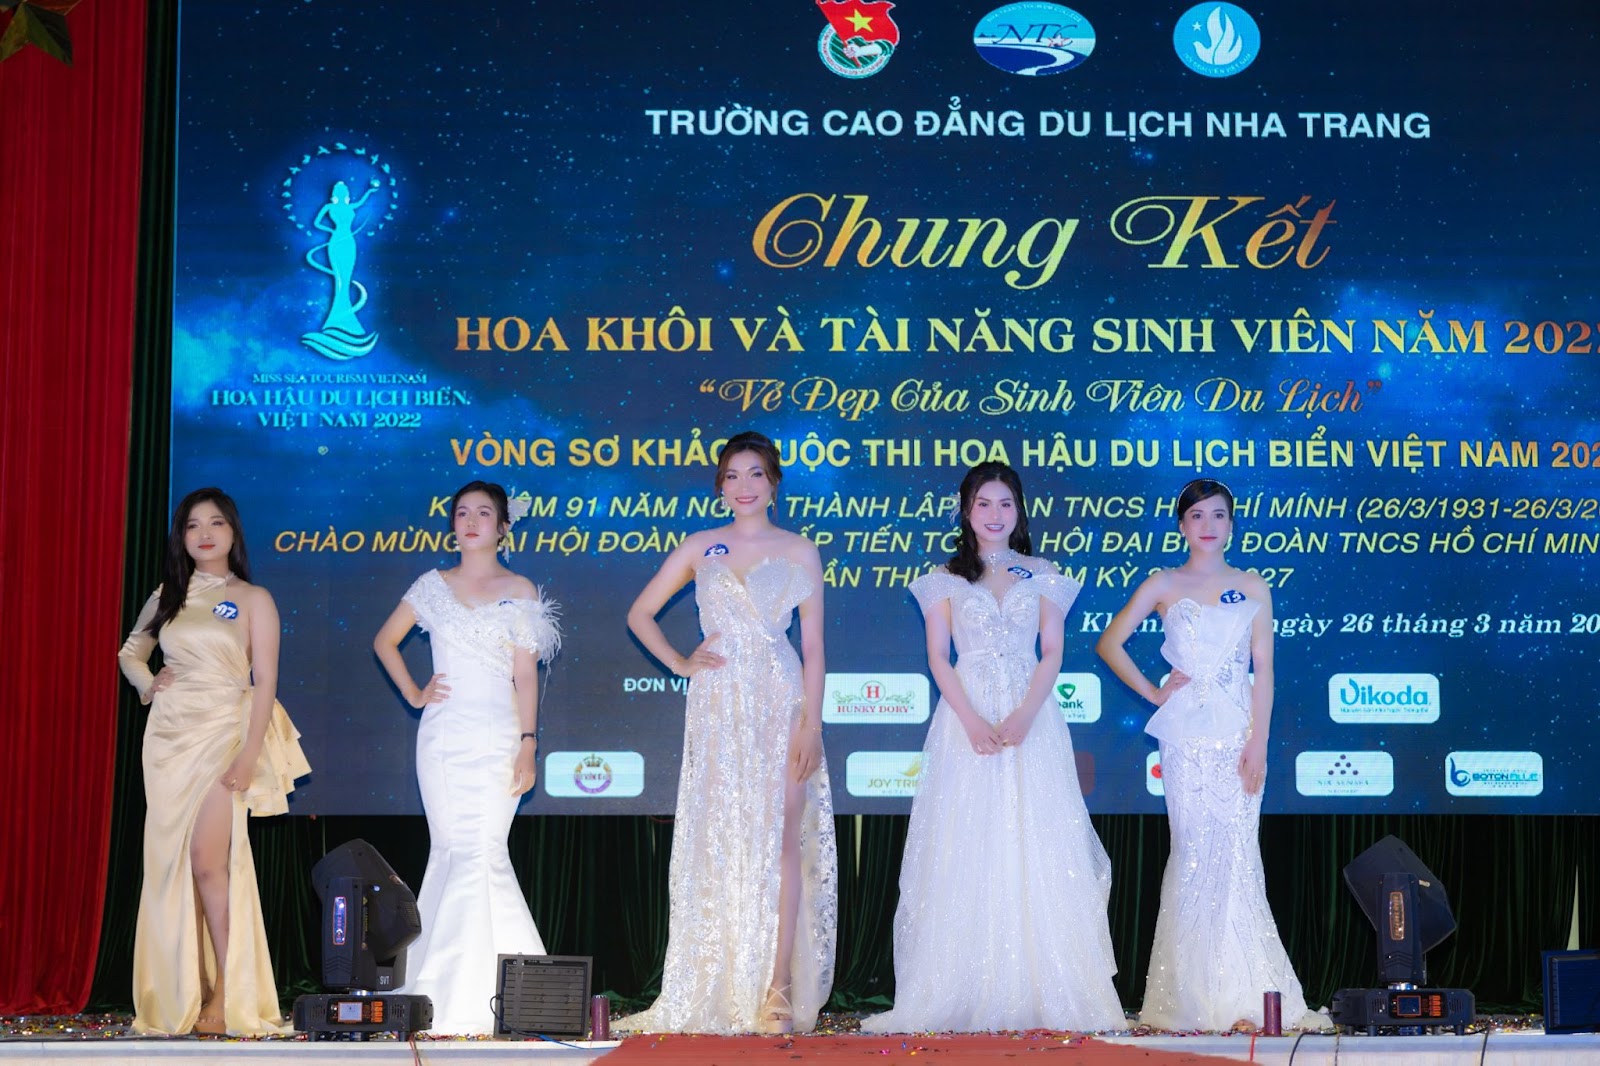 Vòng sơ khảo cuộc thi Hoa hậu Du lịch biển Việt Nam 2022 - 2